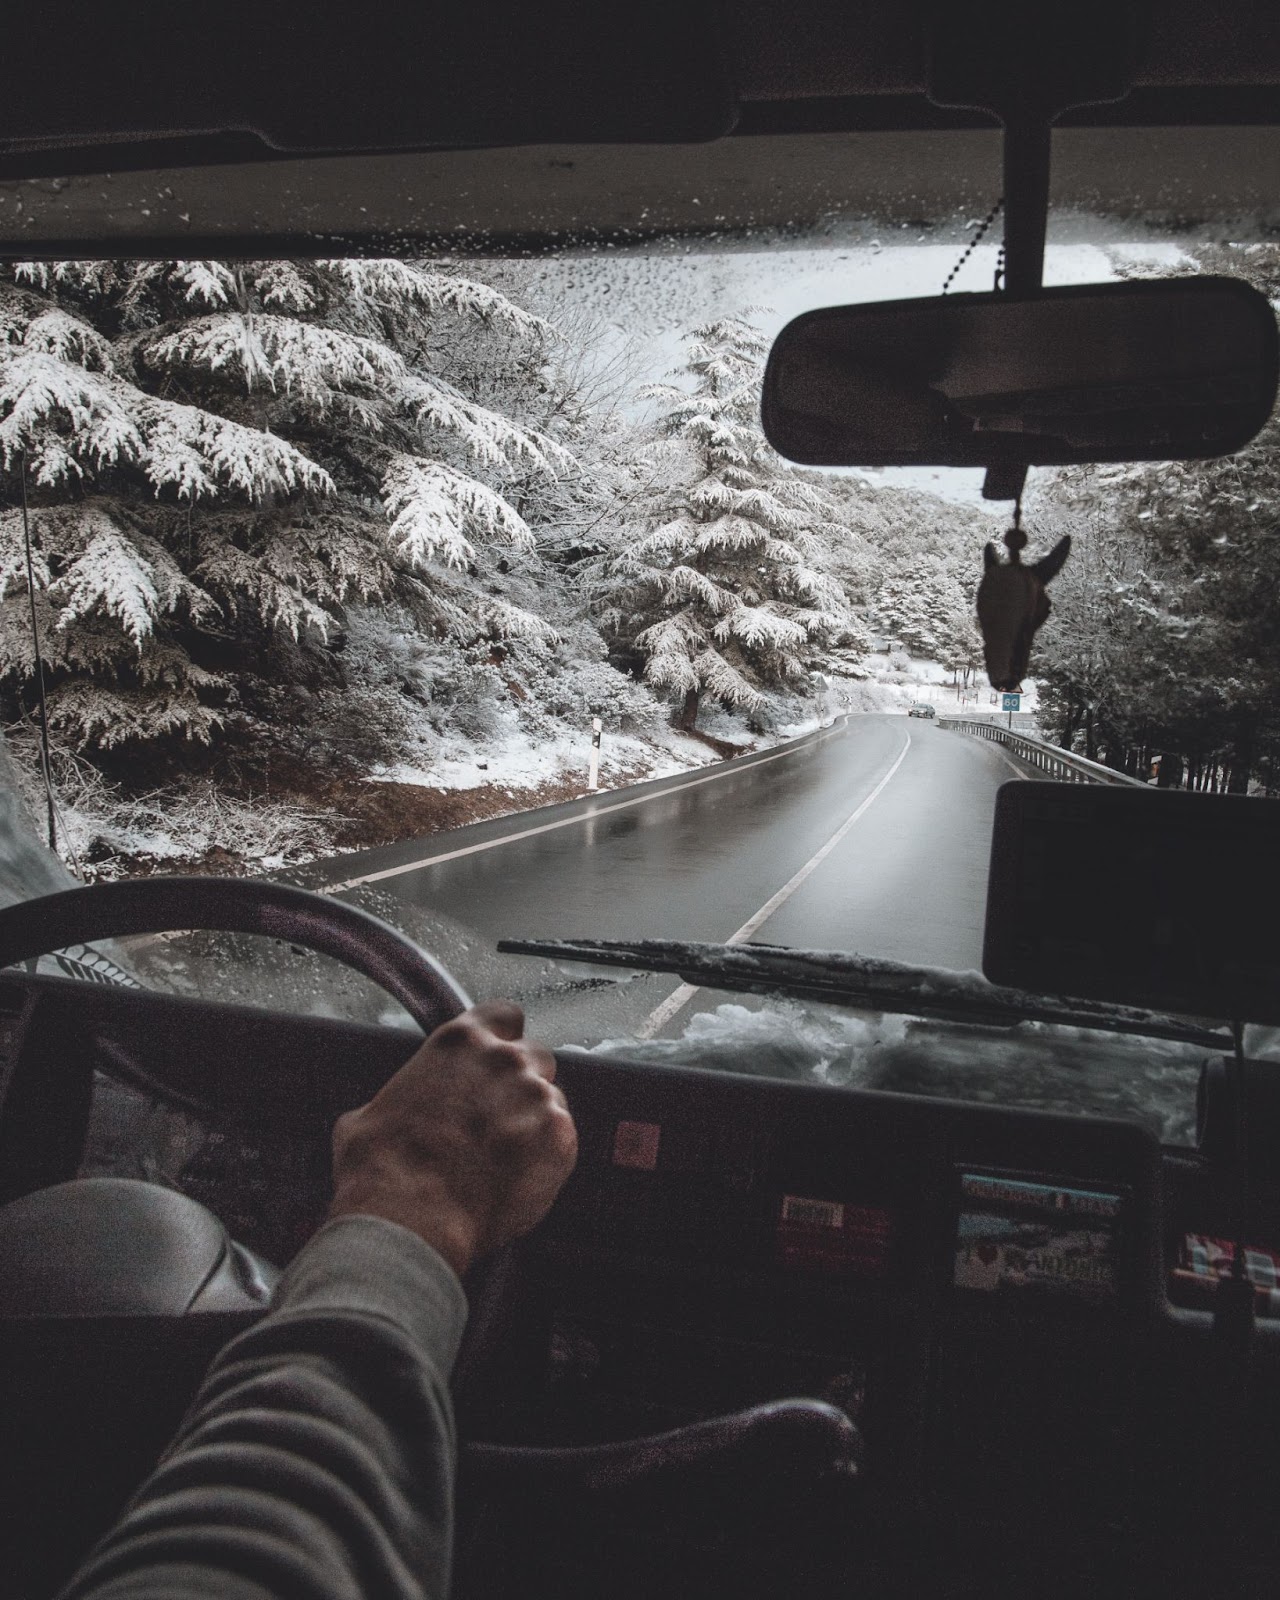 RV on a snowy road